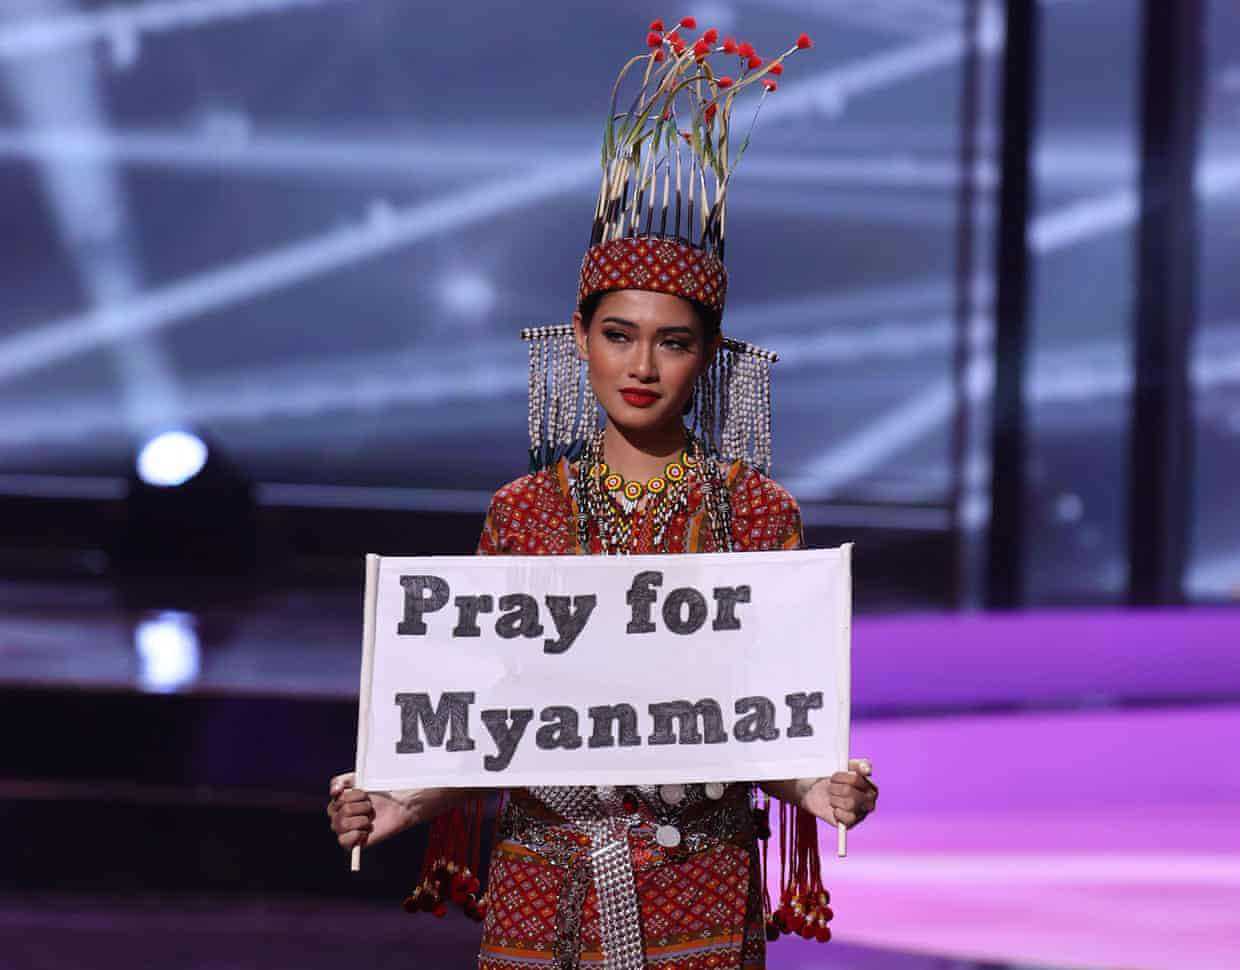 Hoa hậu Myanmar dự thi Miss Universe bác tin bị truy nã, nói chưa dám trở về - Ảnh 1.